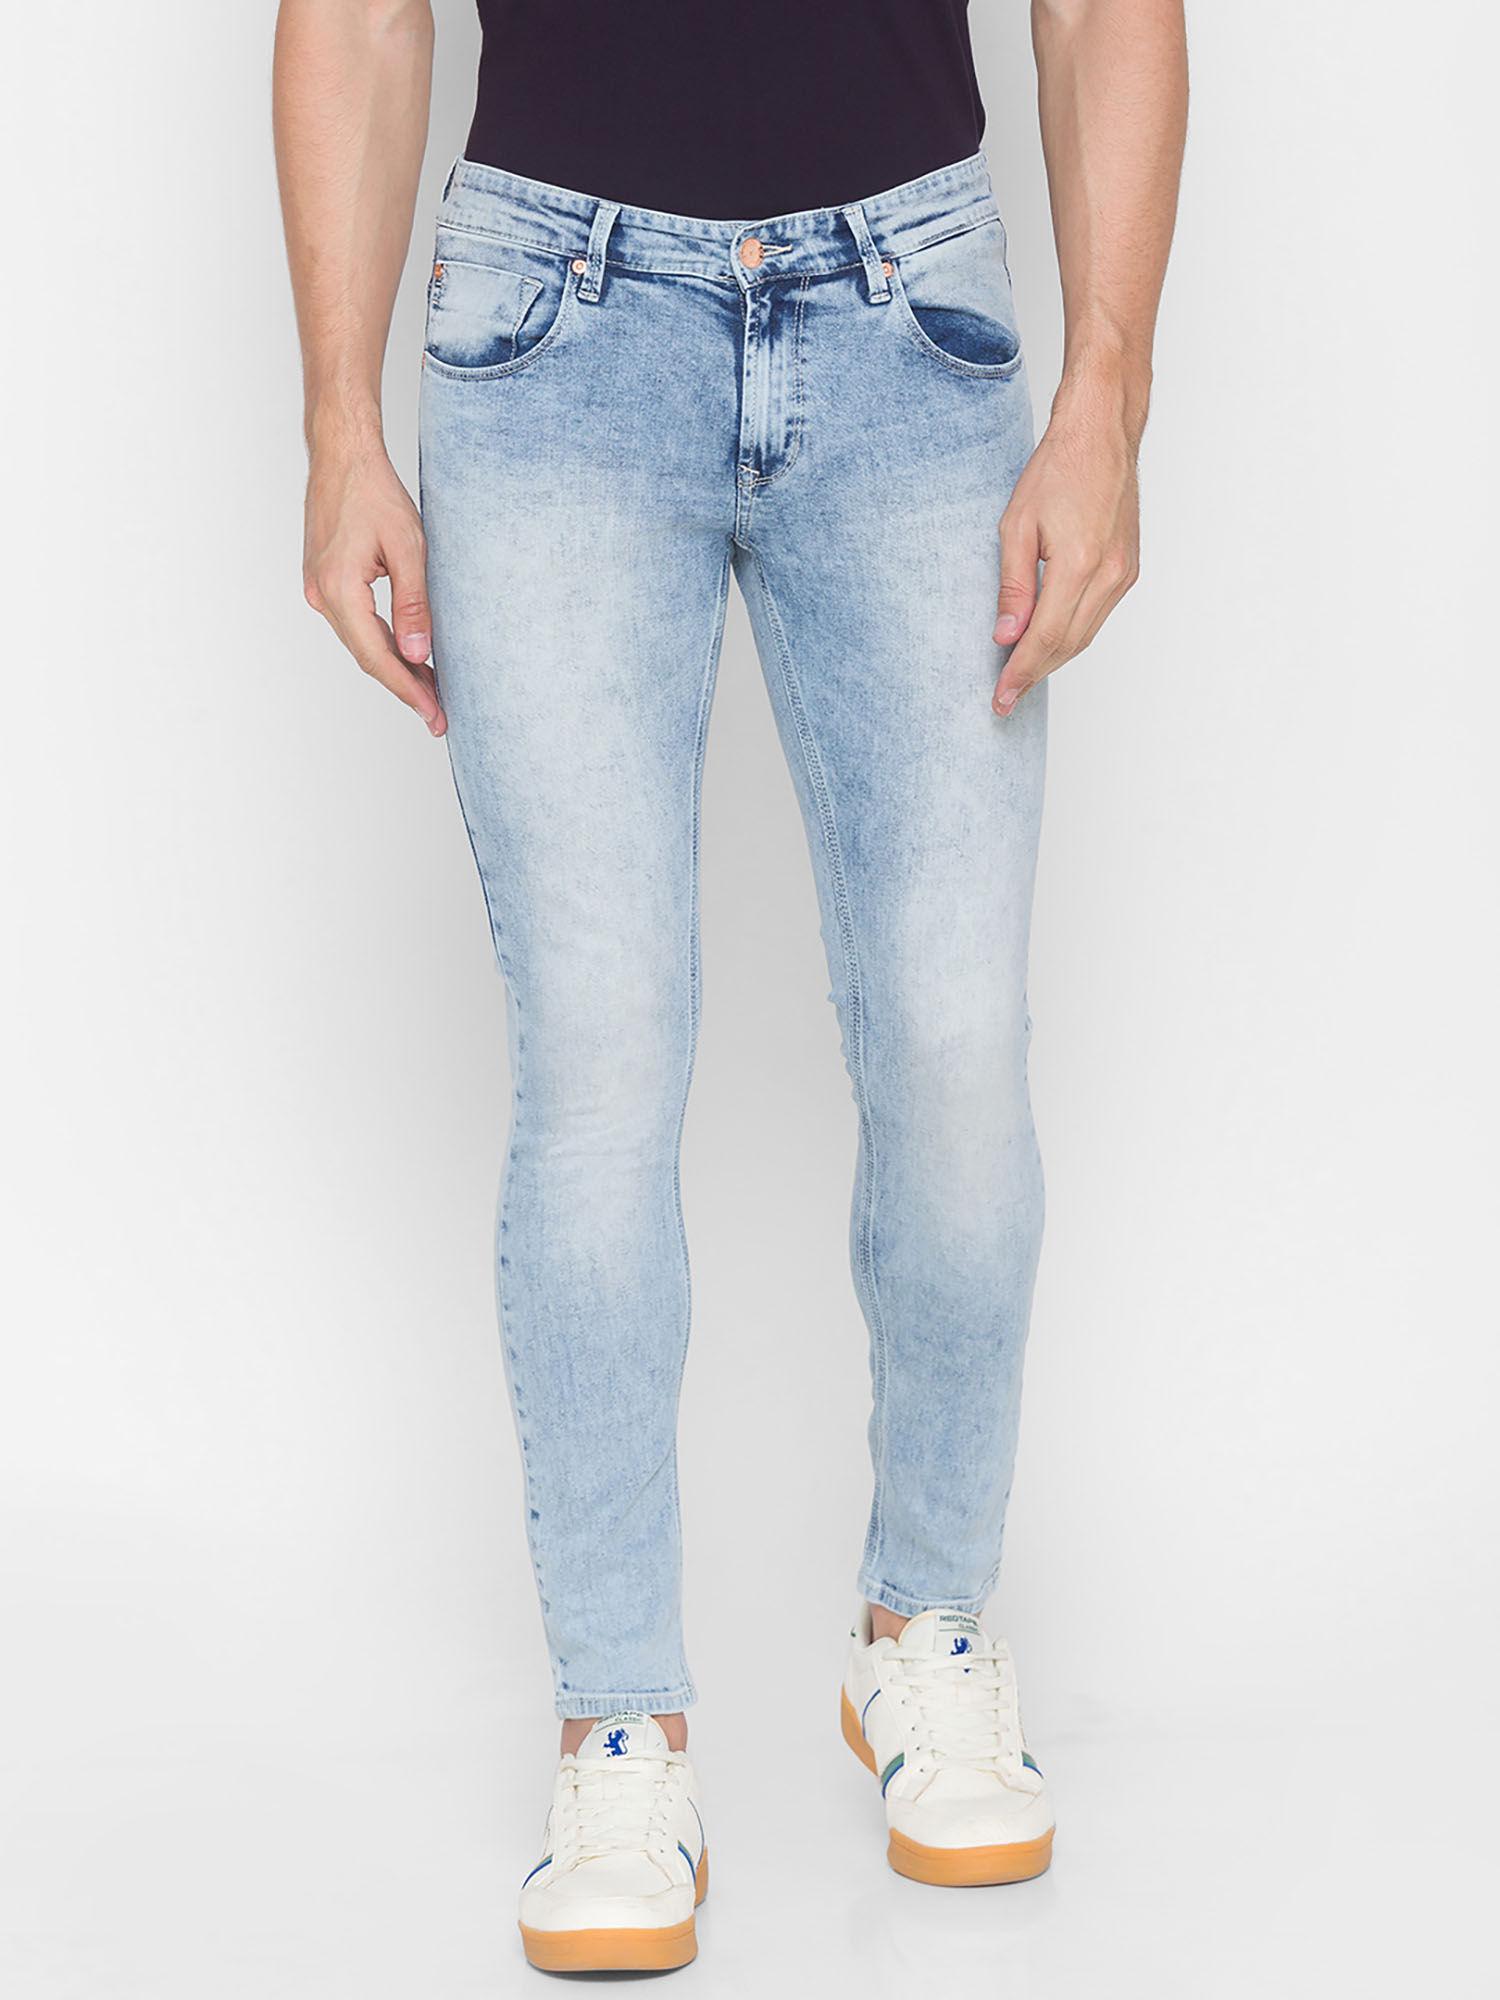 blue cotton mens jeans